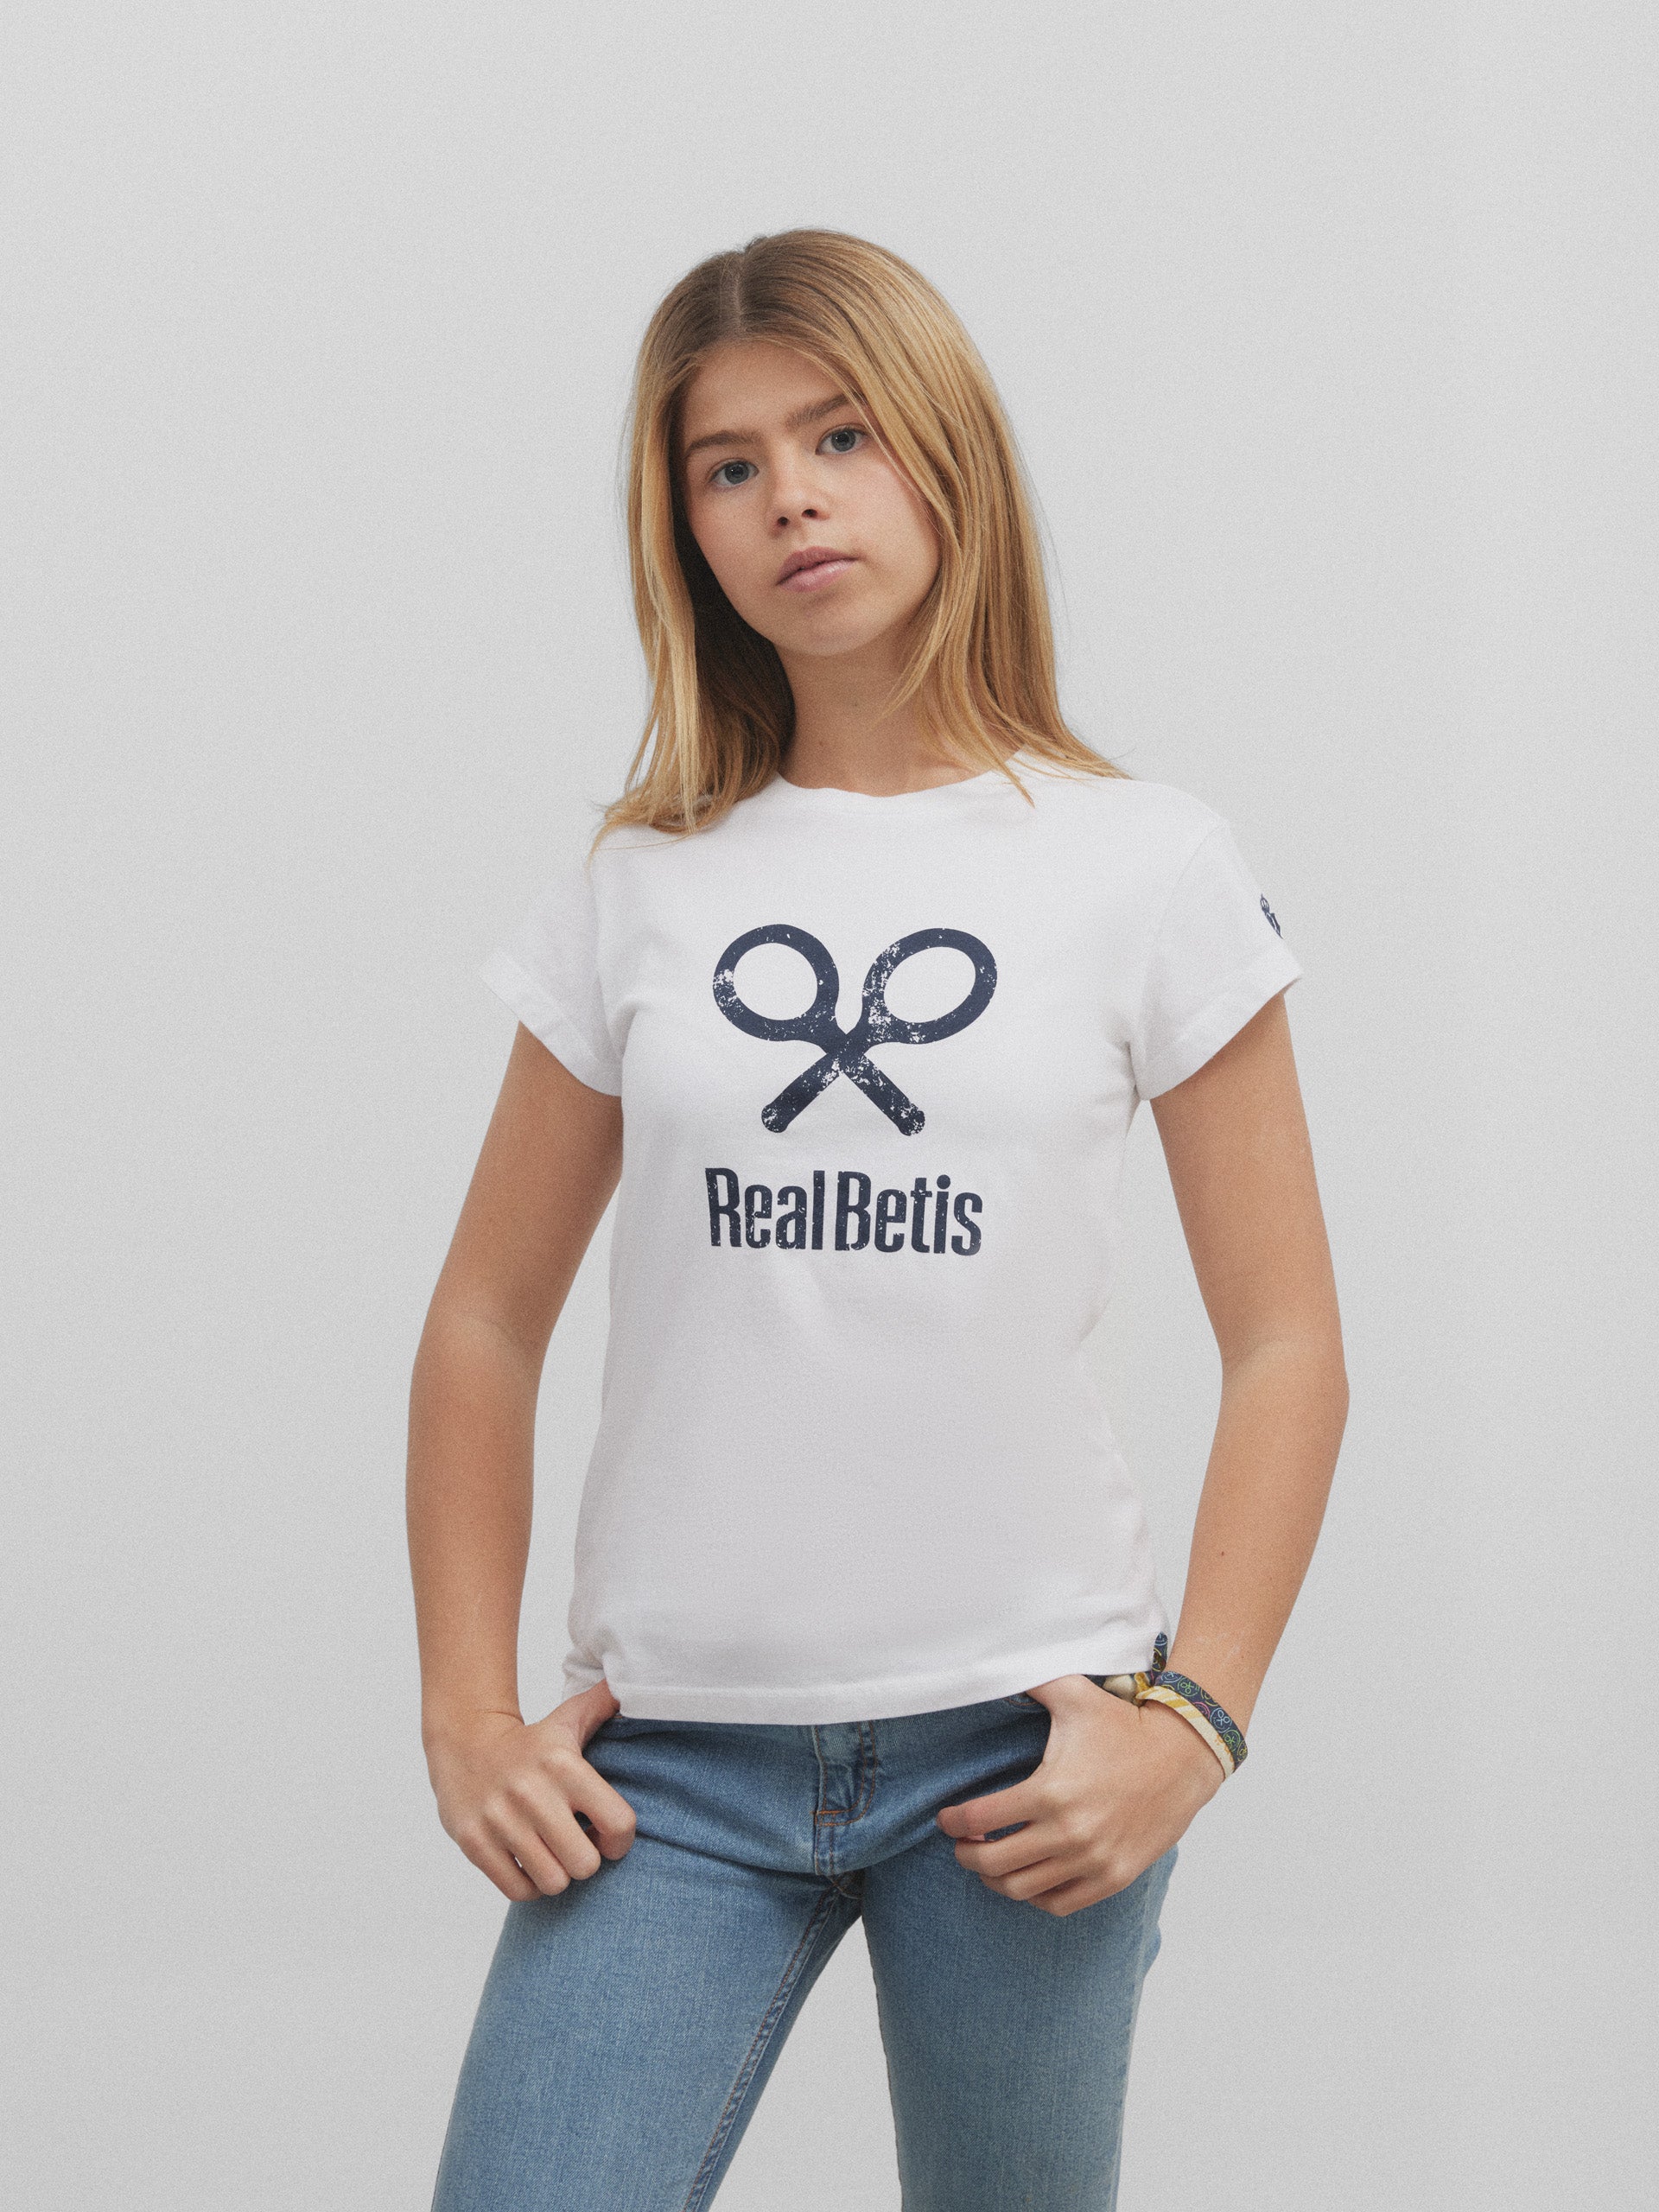 Real Betis white racket girl t-shirt